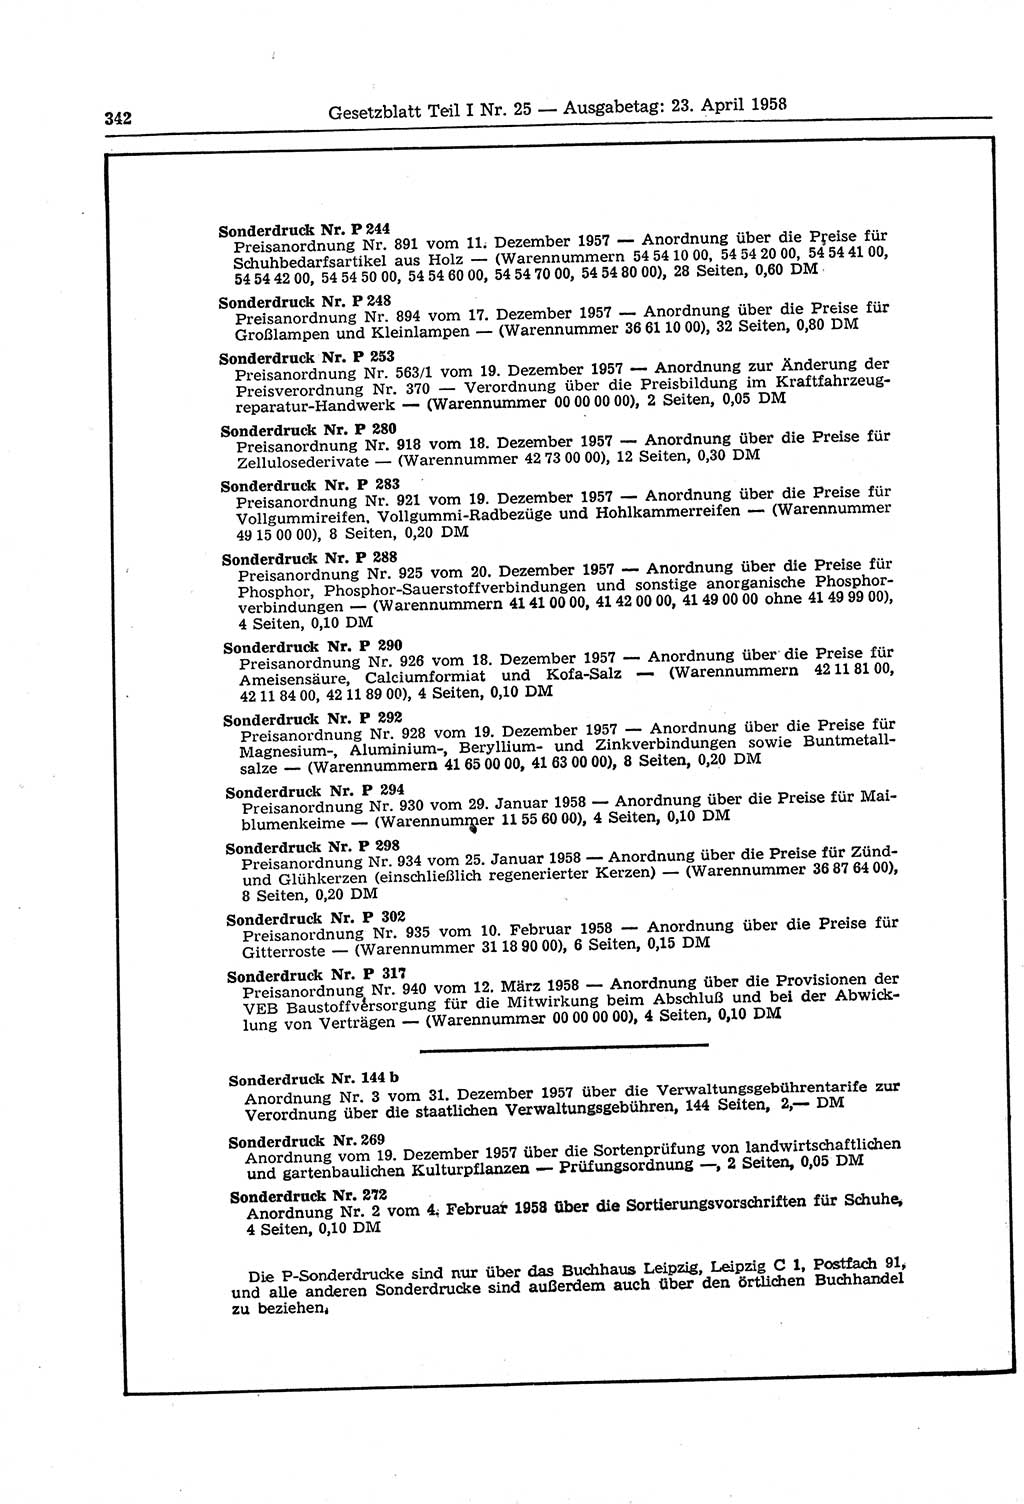 Gesetzblatt (GBl.) der Deutschen Demokratischen Republik (DDR) Teil Ⅰ 1958, Seite 342 (GBl. DDR Ⅰ 1958, S. 342)